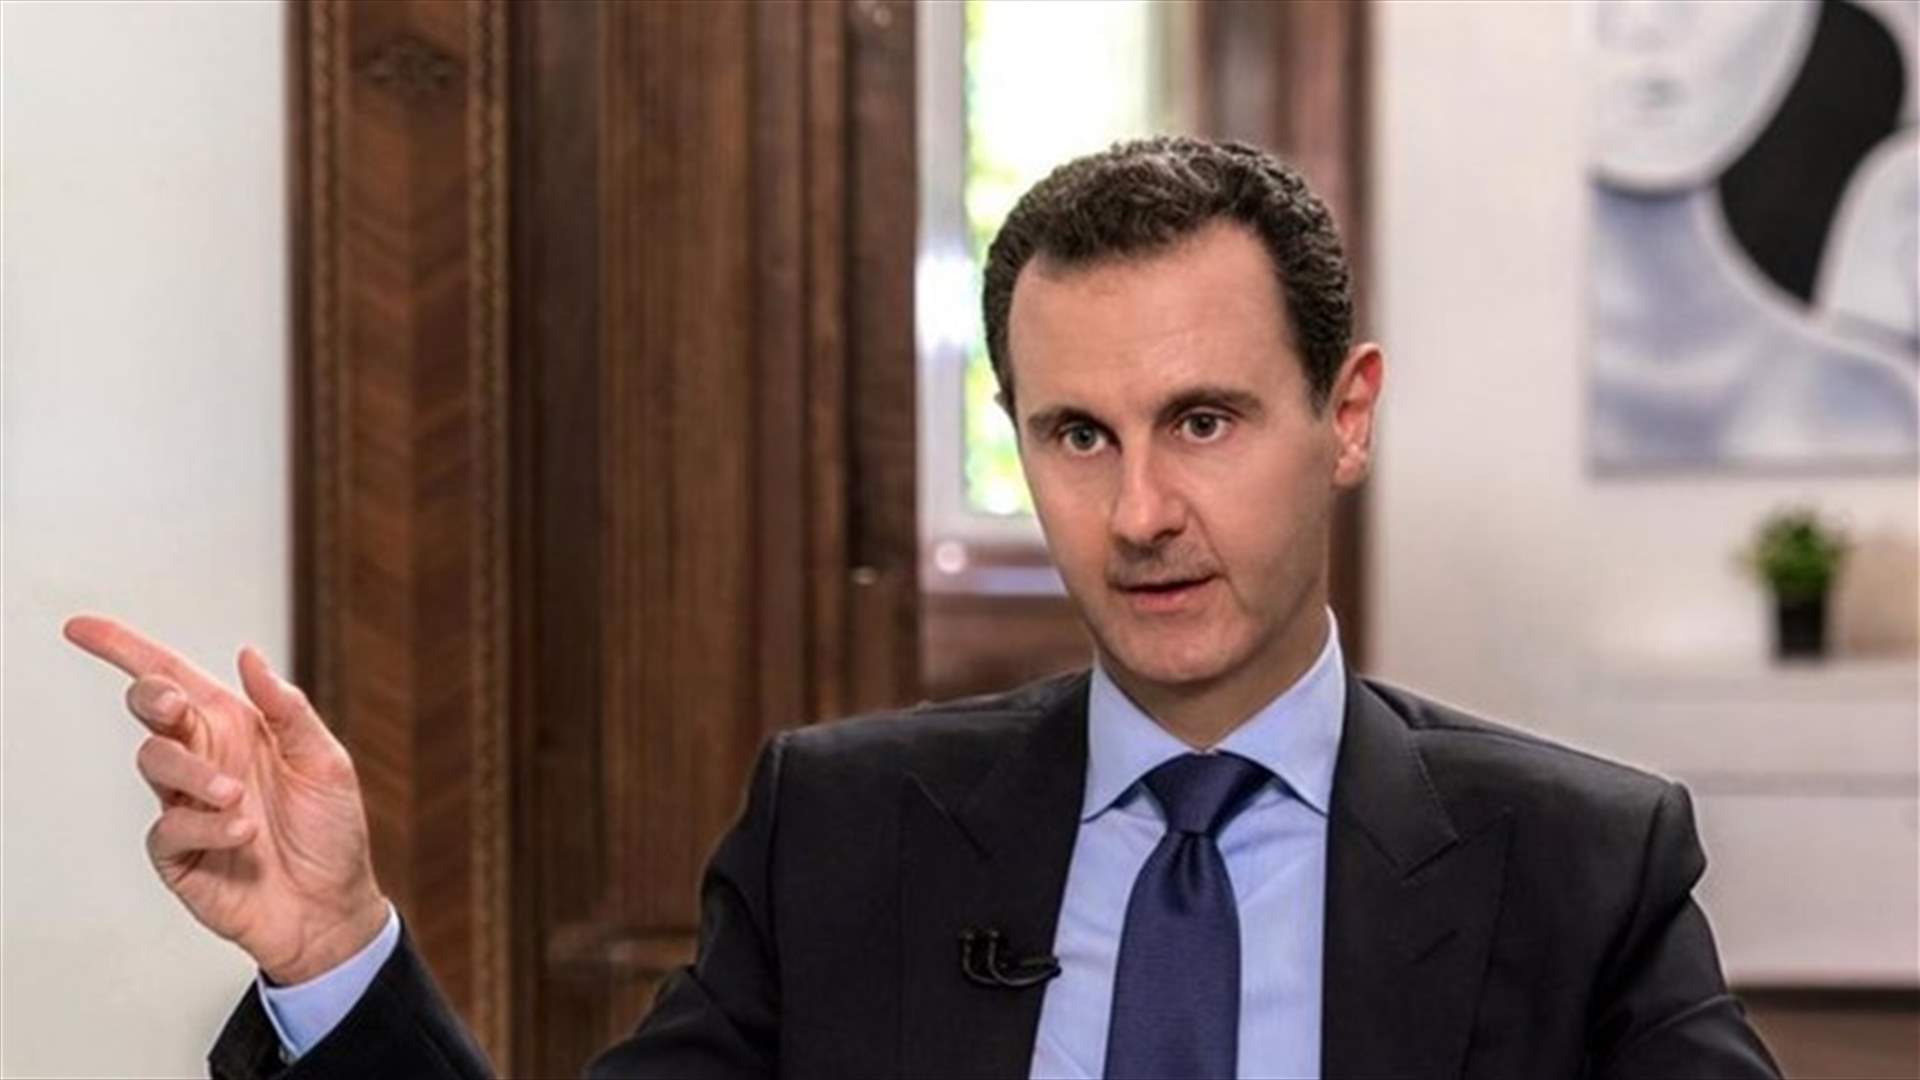 الرئيس السوري يقطع كلمته لبضع دقائق بسبب انخفاض في ضغط الدم